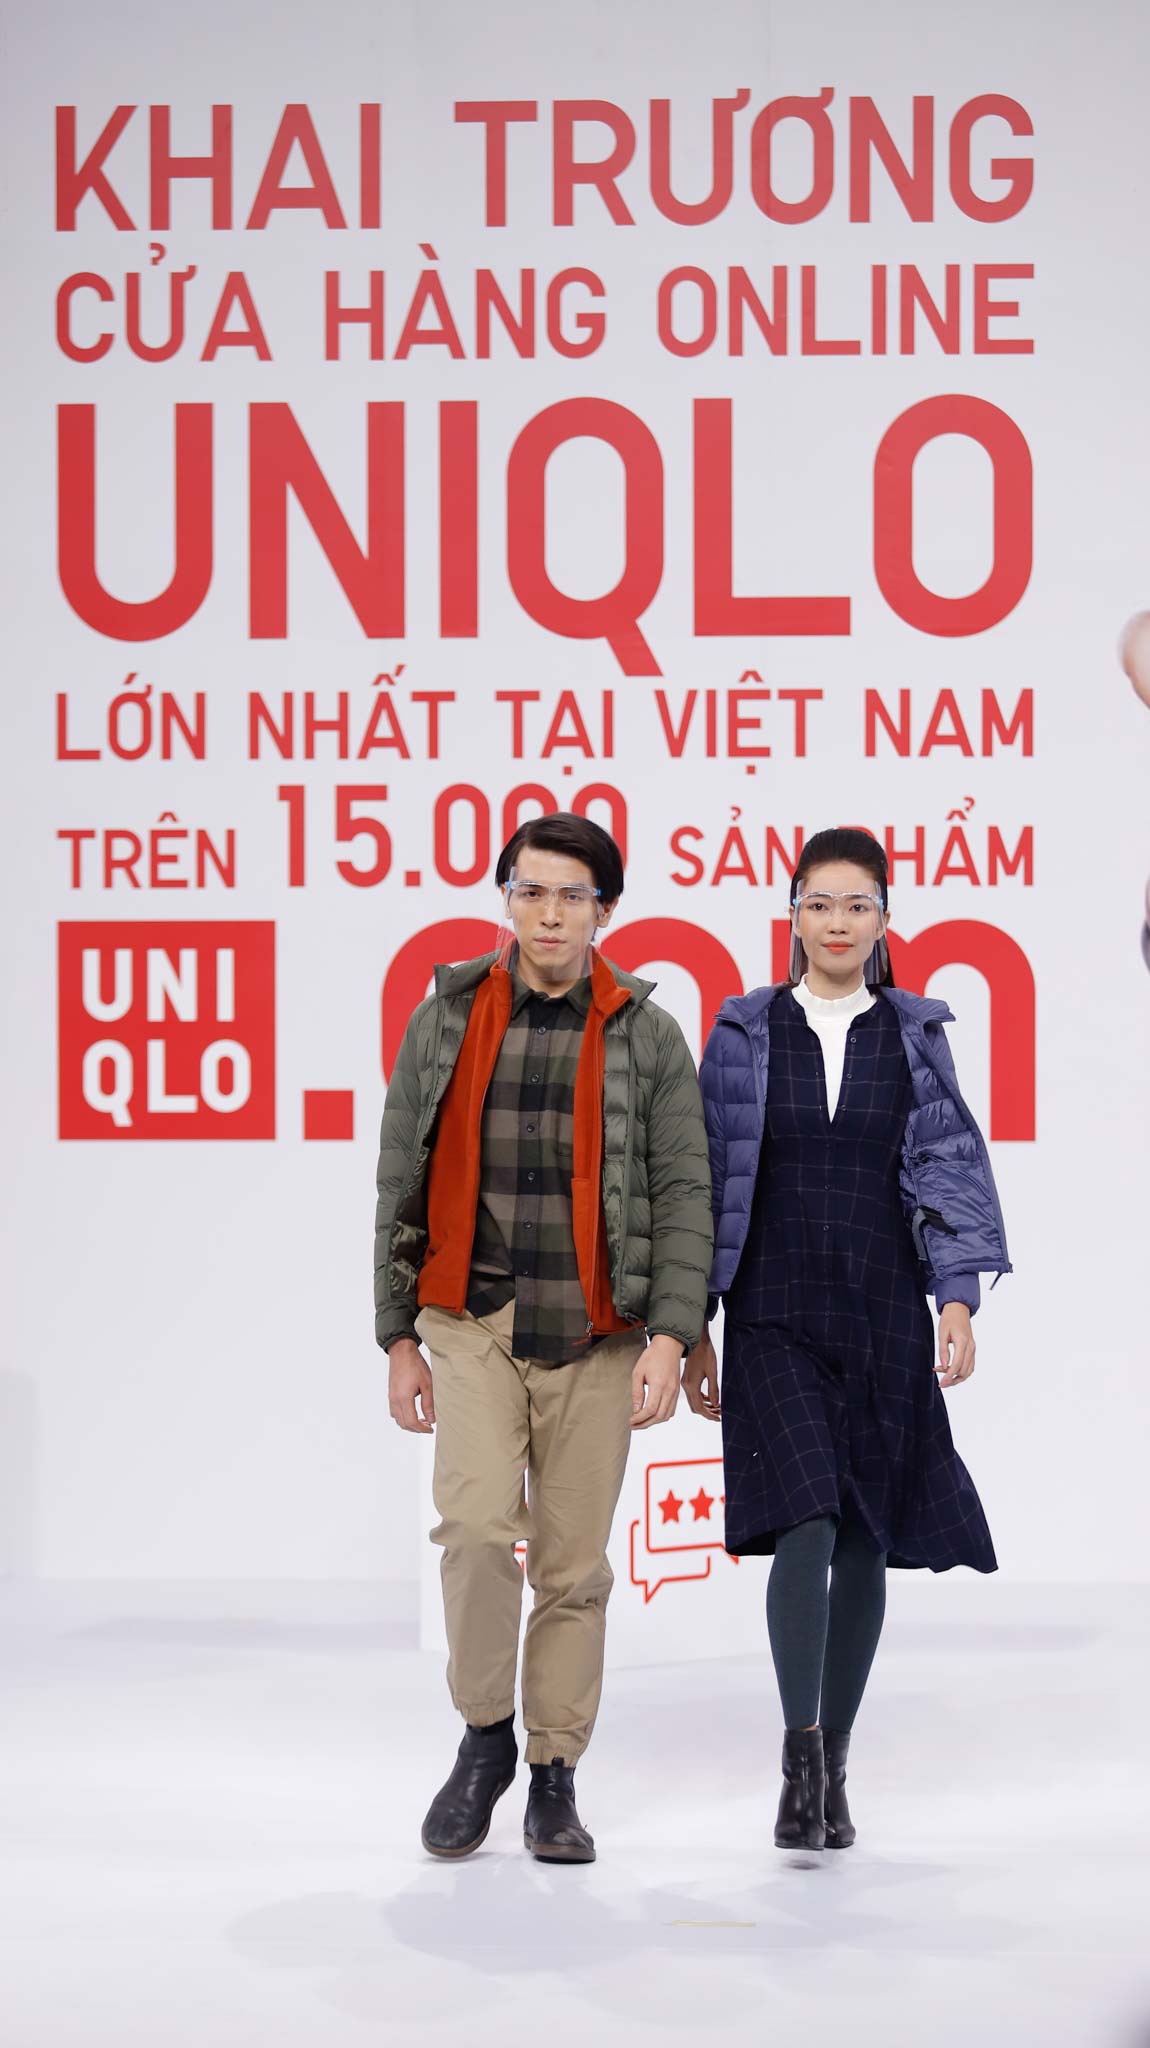 Trải nghiệm ứng dụng UNIQLO online Nhiều tiện tích thông minh bước đi  chỉn chu từ thương hiệu Nhật Bản  Báo Dân trí